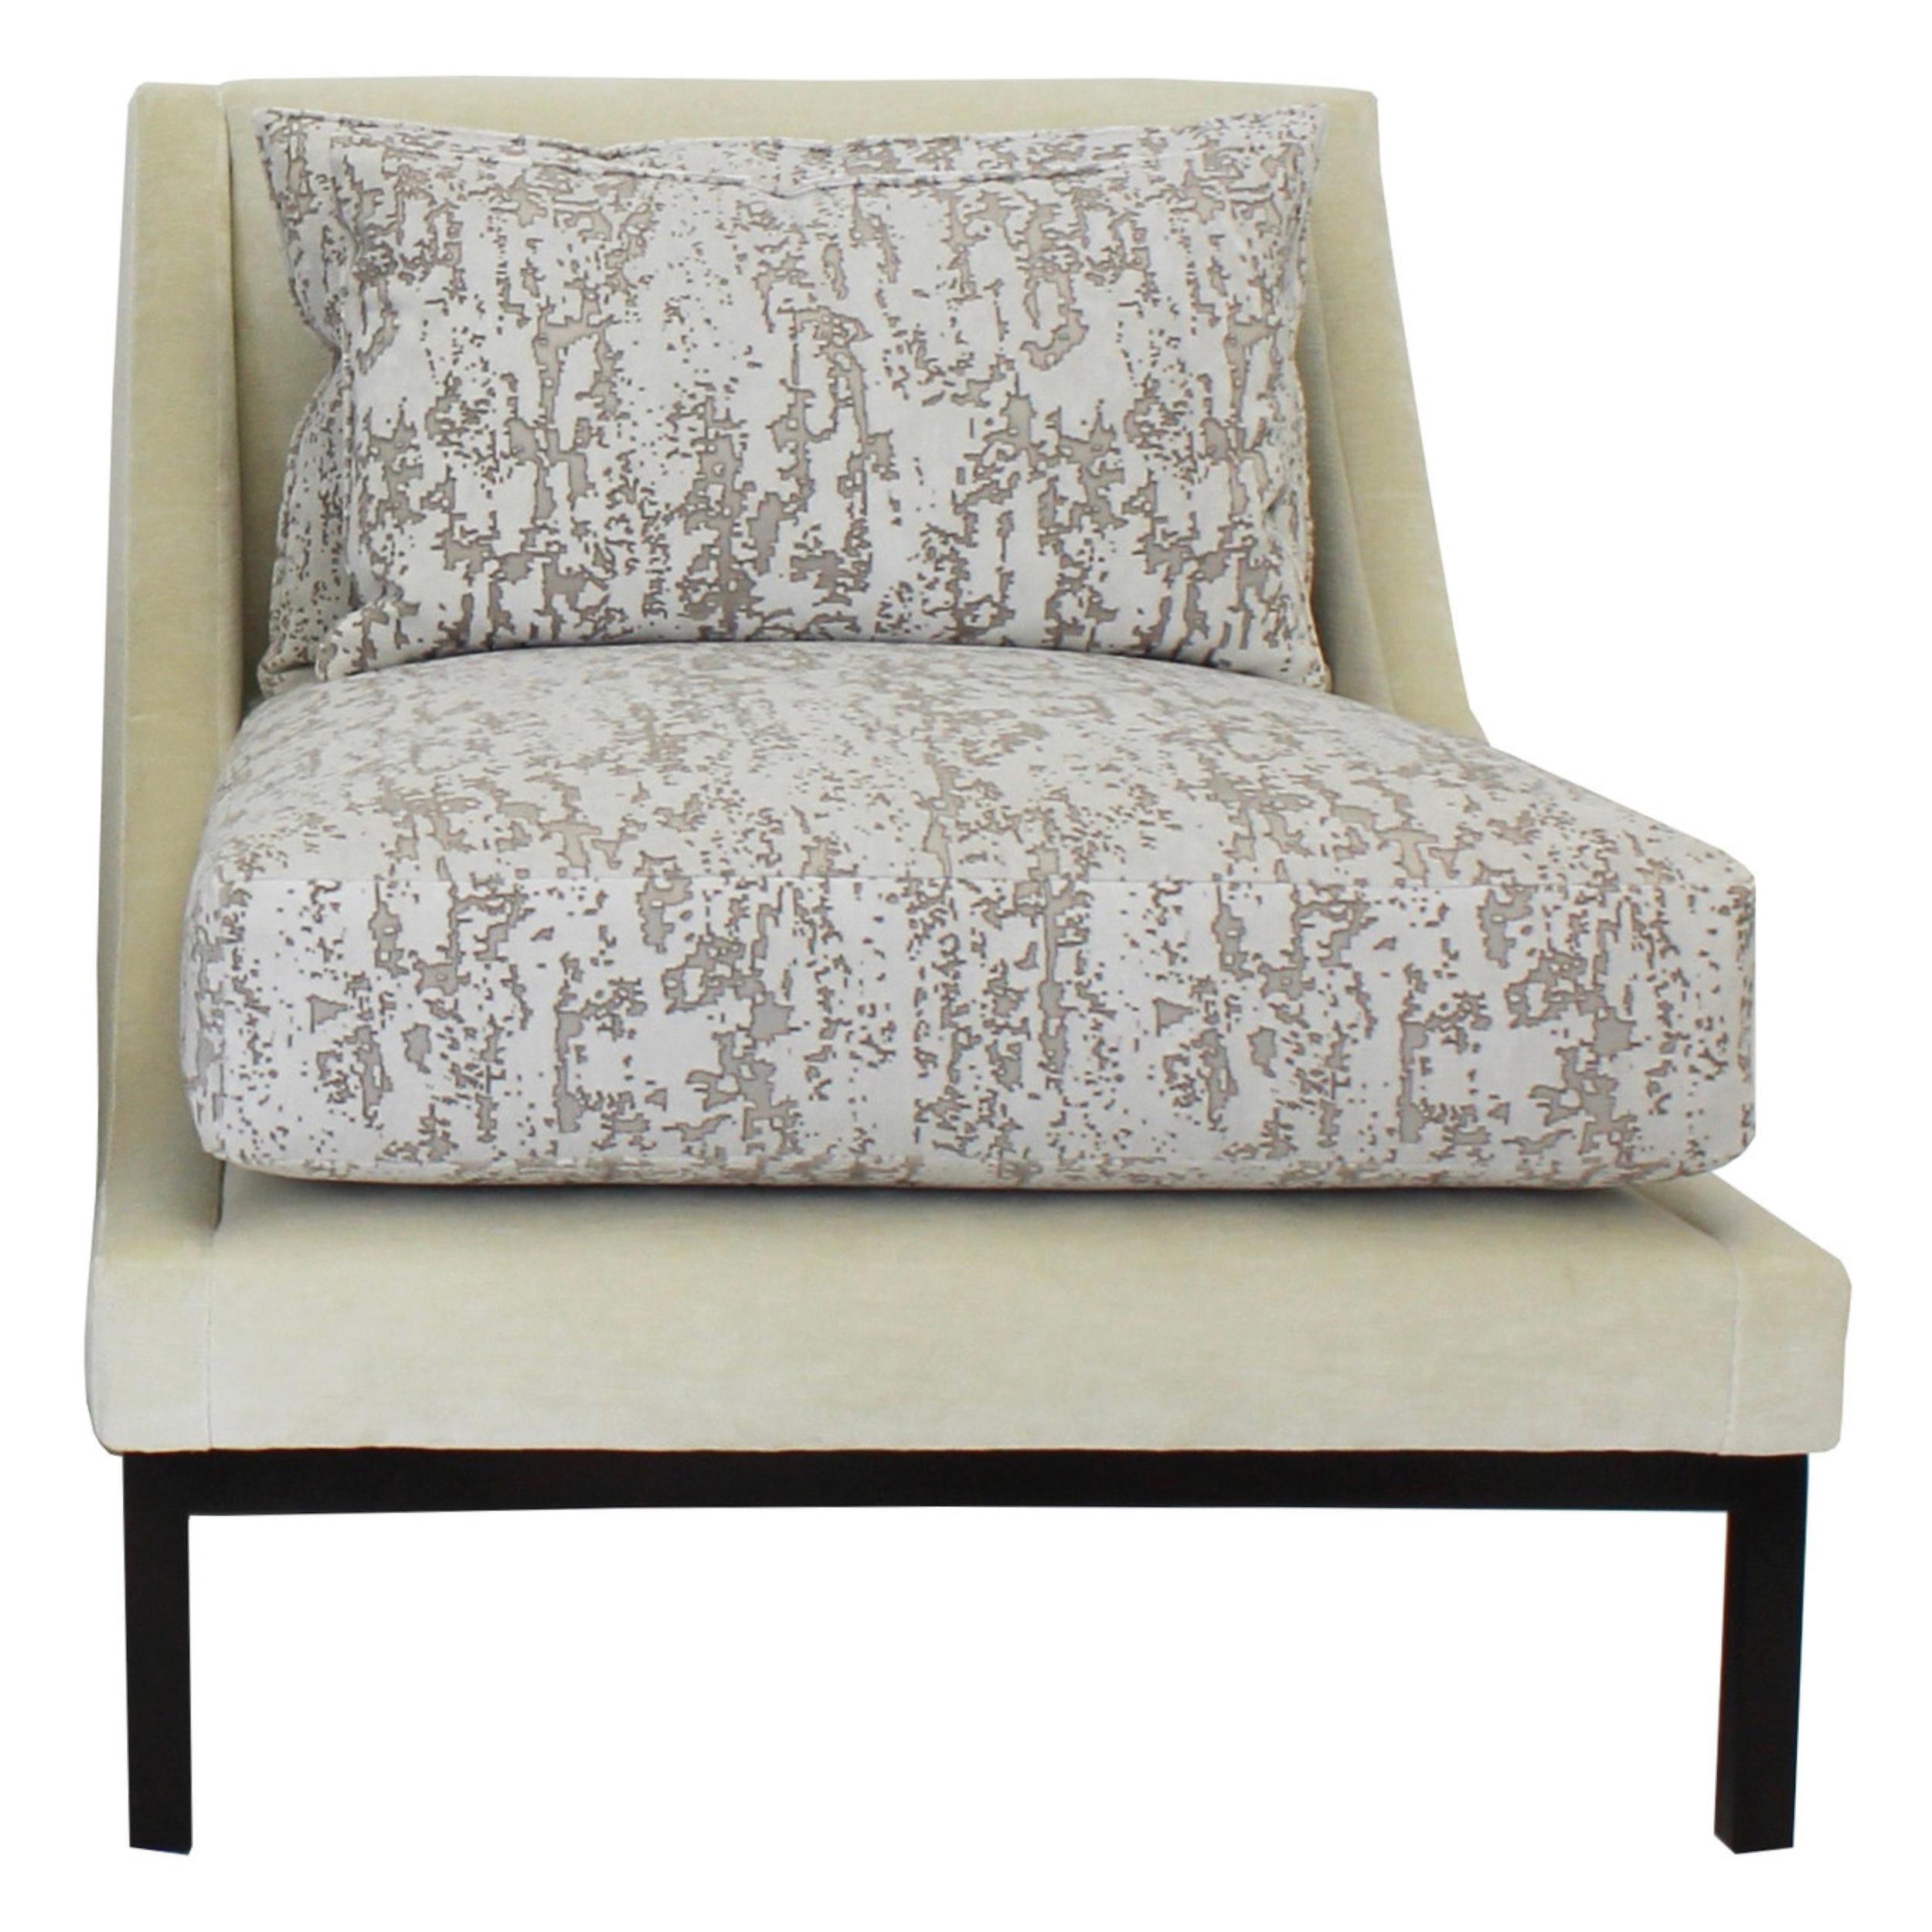 Der vom Art Deco inspirierte Club-Sessel verfügt über eine Rückenlehne aus losen Federn/Daunen und eine Sitzfläche aus mit Federn/Daunen umwickeltem Schaumstoff. Abgebildet in einem Zink-Jacquard-Samtstoff mit einem einzigartigen, ausgebrannten